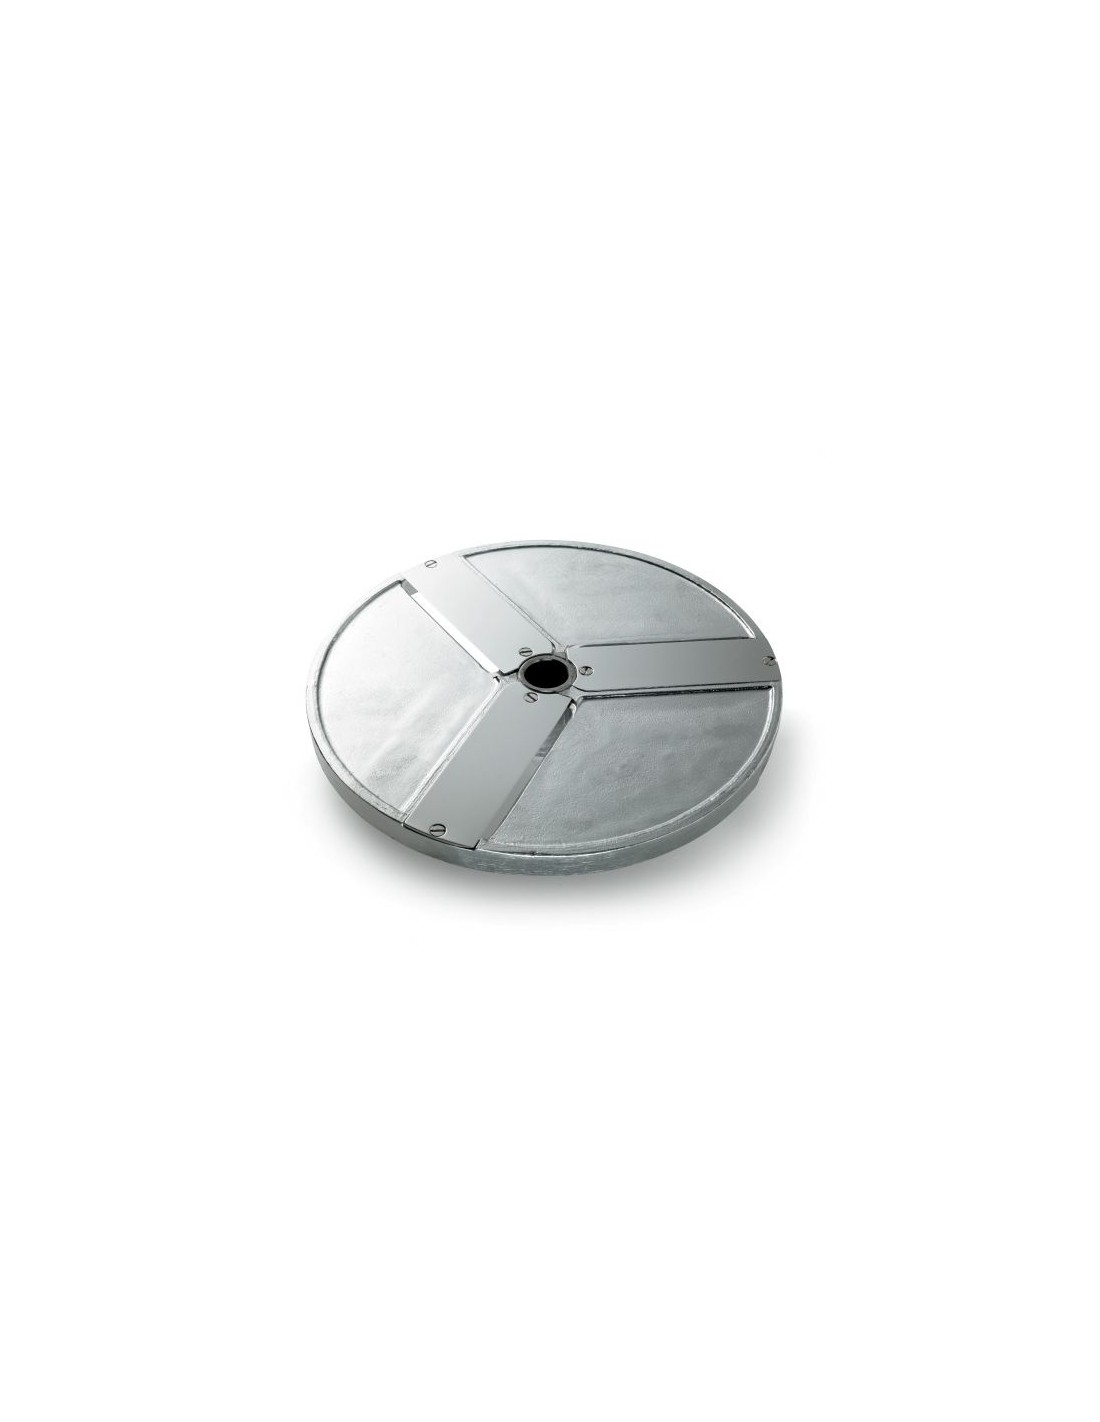 Disco per fette - Diametro mm 205 - Spessore taglio mm 20